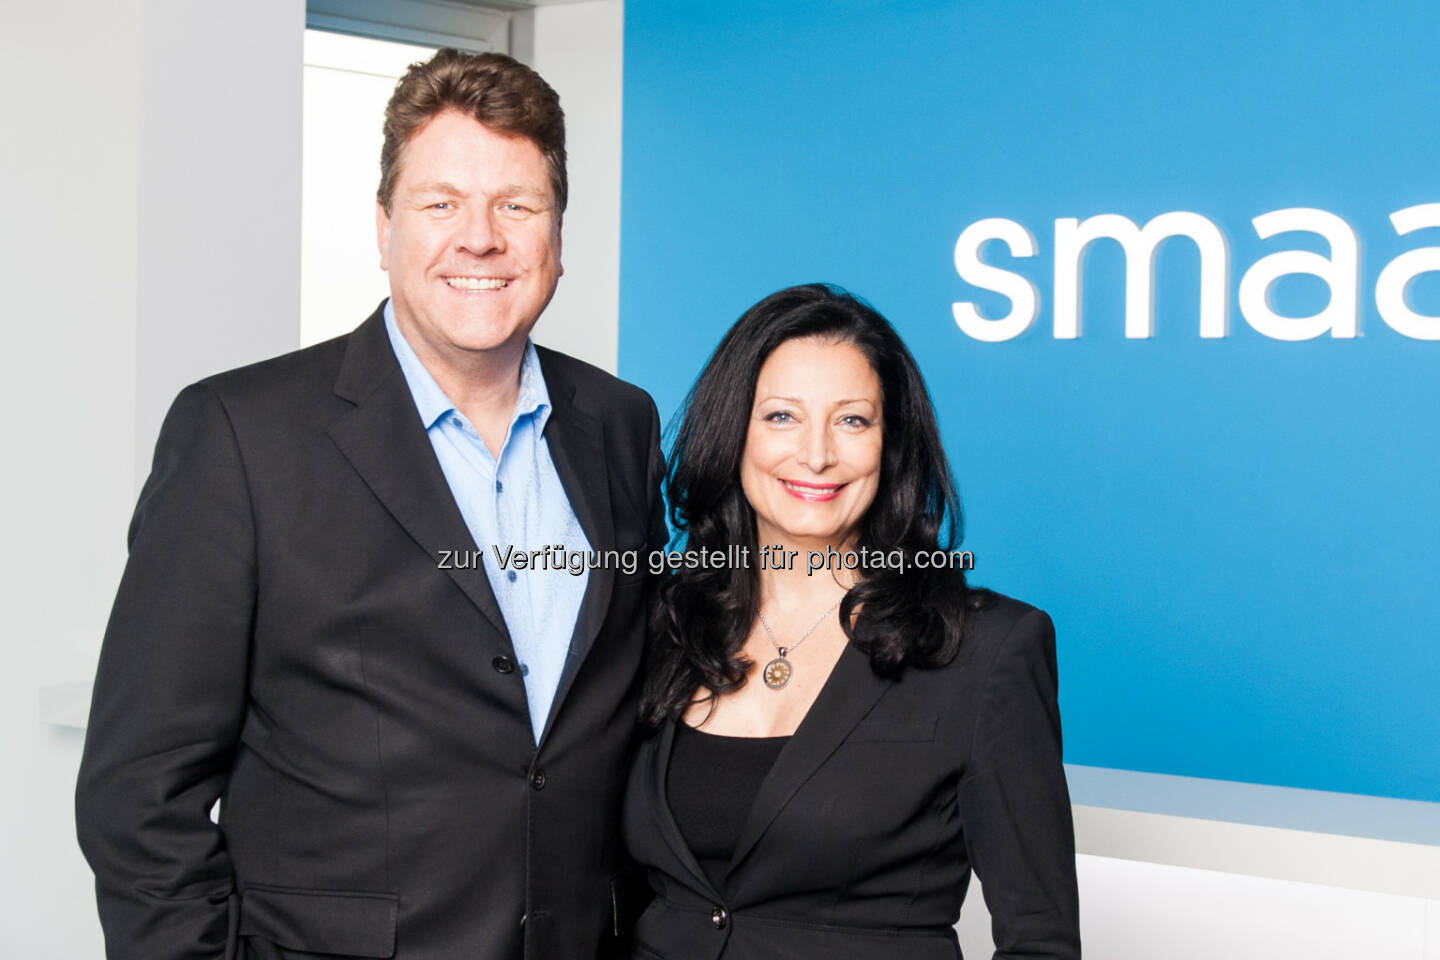 Ragnar Kruse und Petra Vorsteher - Gründer von Smaato. Mobile Advertising wächst ungebrochen: Smaato, größte Auktionsplattform für mobile Werbung, baut globale Führung aus. (Bild: obs/Smaato/Julia Grudda)